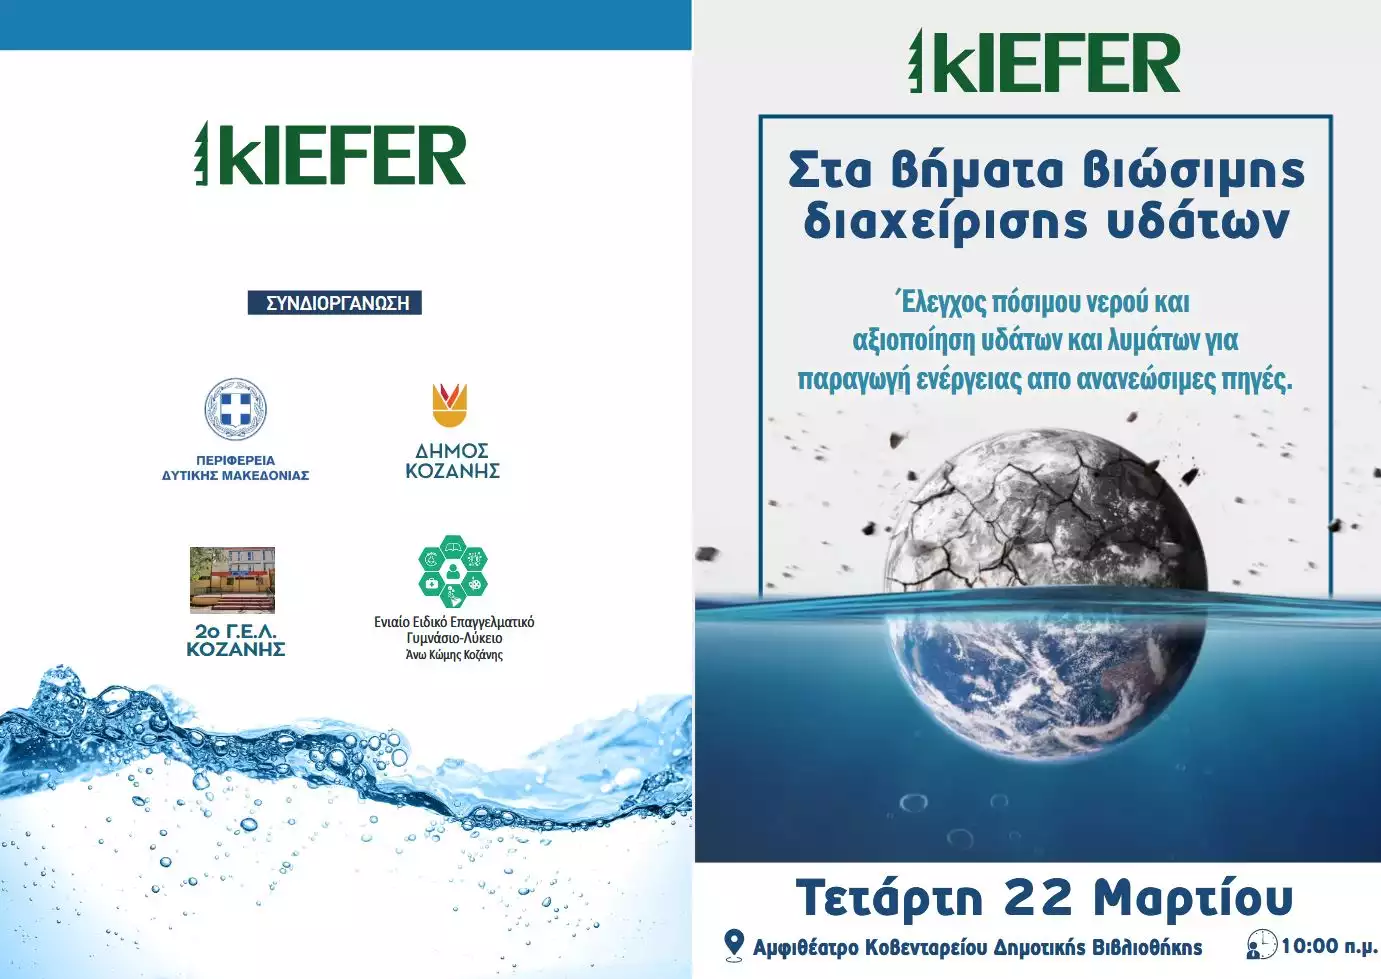 Ημερίδα Από Την Εταιρεία “Kiefer”, Για Τα ‘Βήματα Βιώσιμης Διαχείρισης Υδάτων”